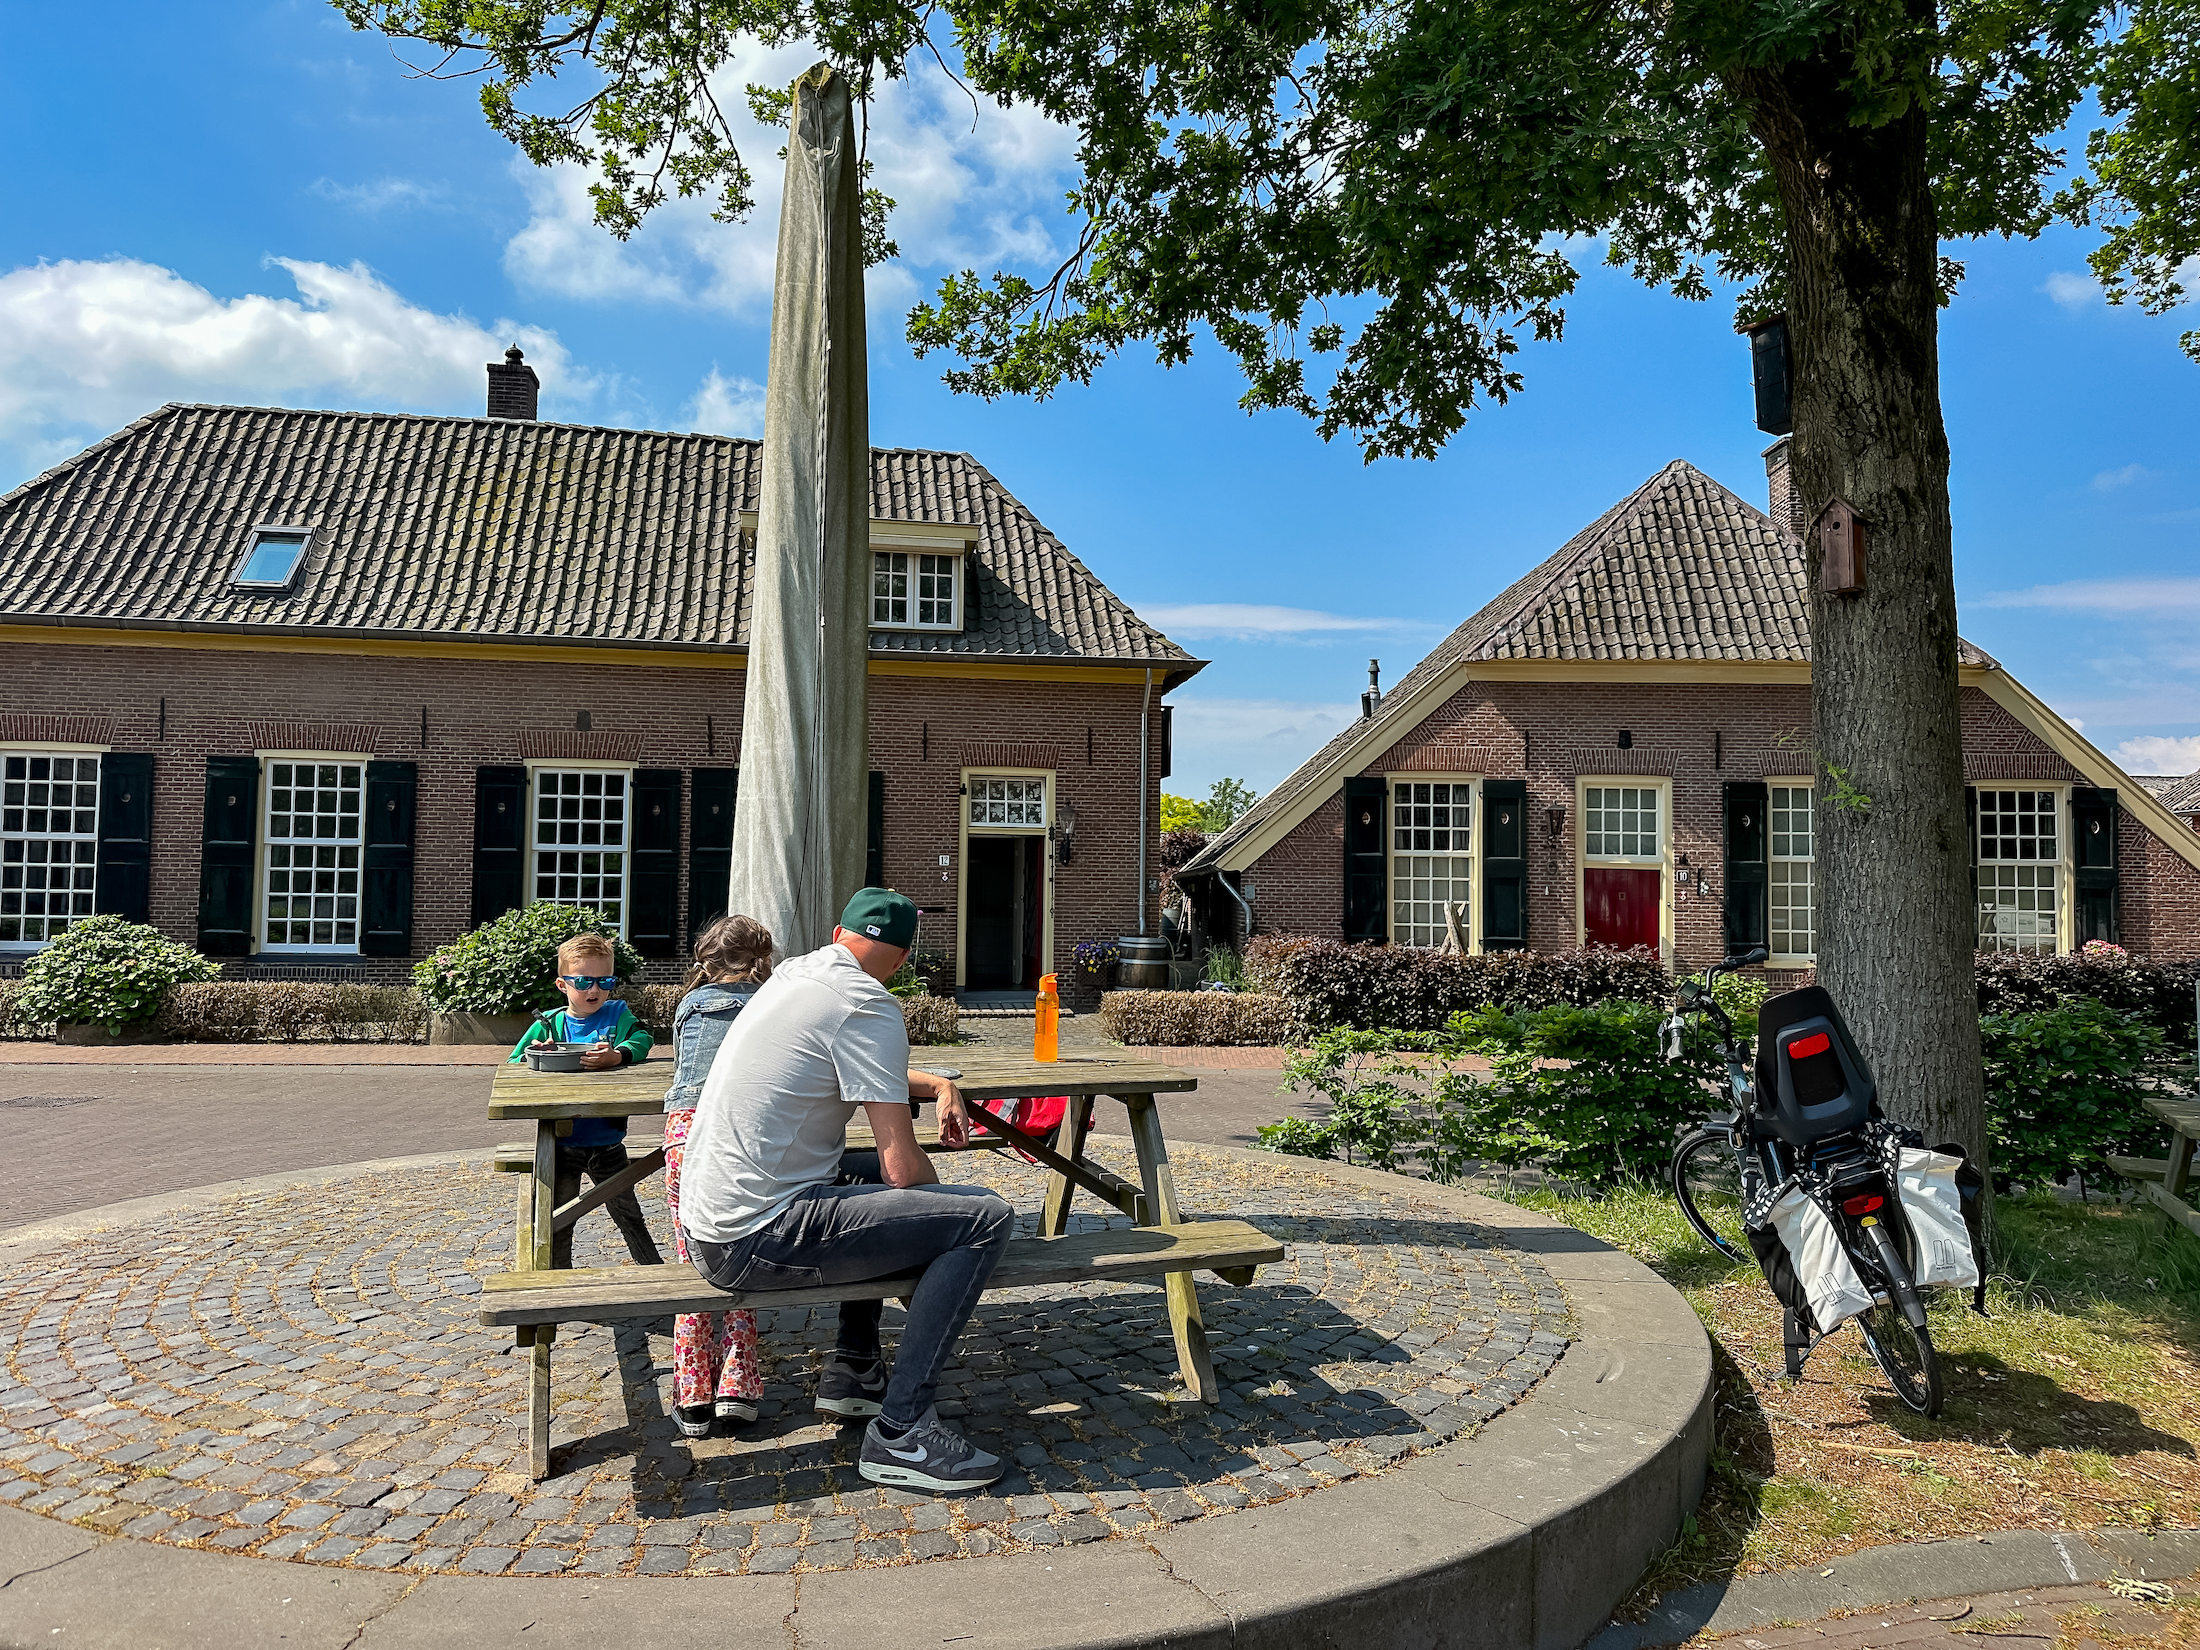 Je vindt rondom Doetinchem leuke kleine dorpjes voor een tussenstop tijdens het wandelen of fietsen